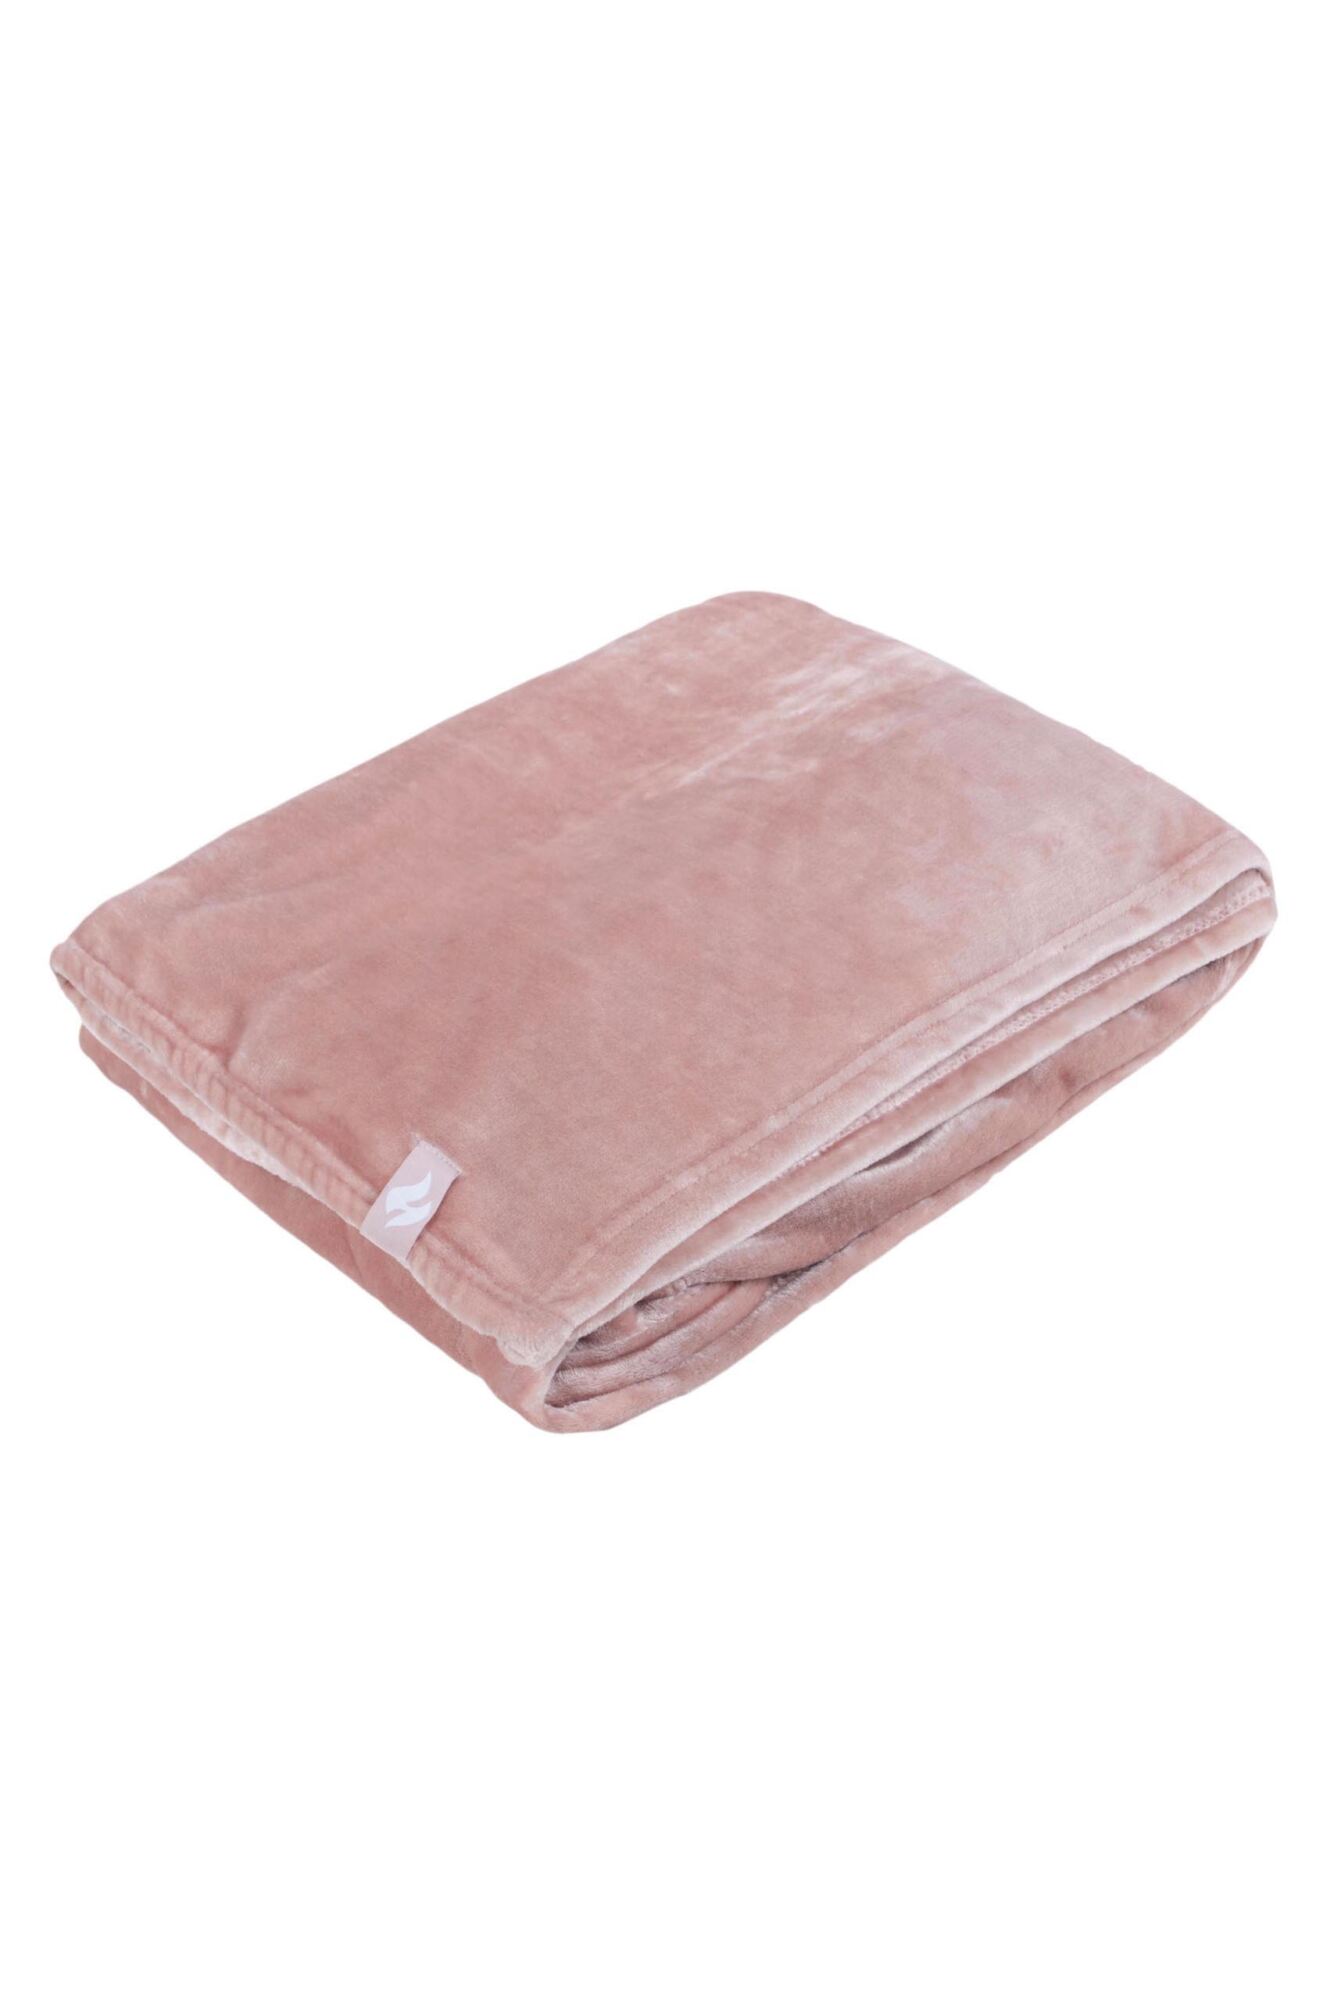 1 Pack Snuggle Up Thermal Blanket Men's Ladies and Kids - Heat Holders